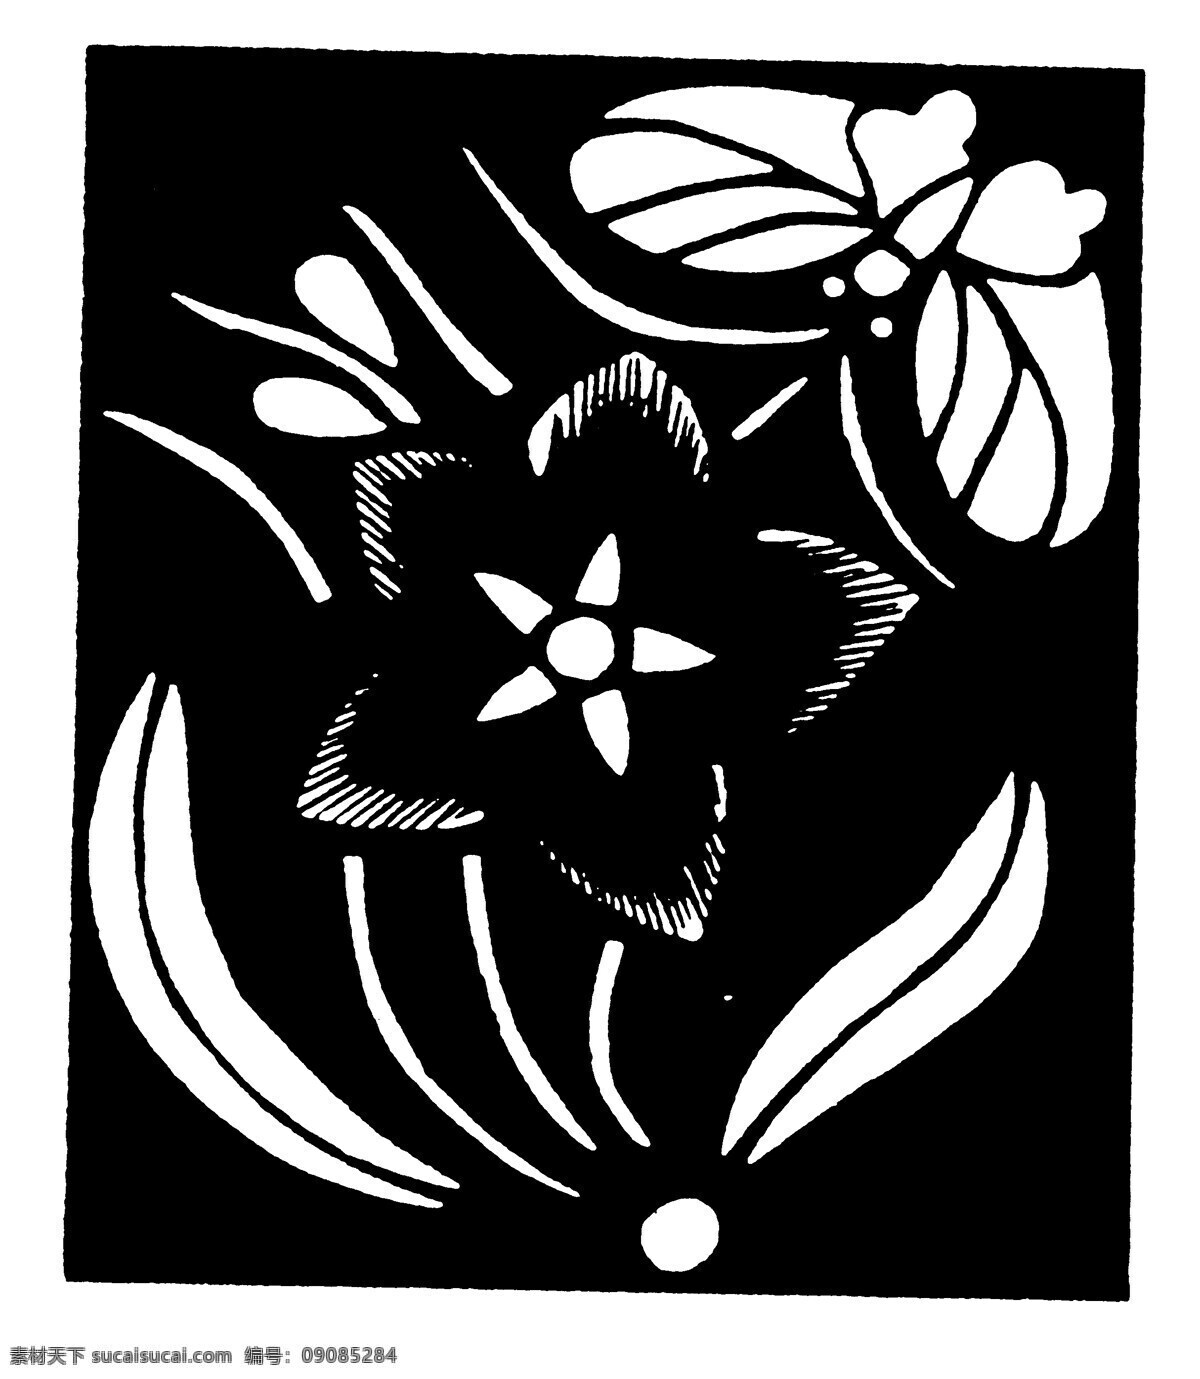 剪纸 清代剪纸 中国 民间艺术 设计素材 剪纸窗花 民间美术 书画美术 黑色